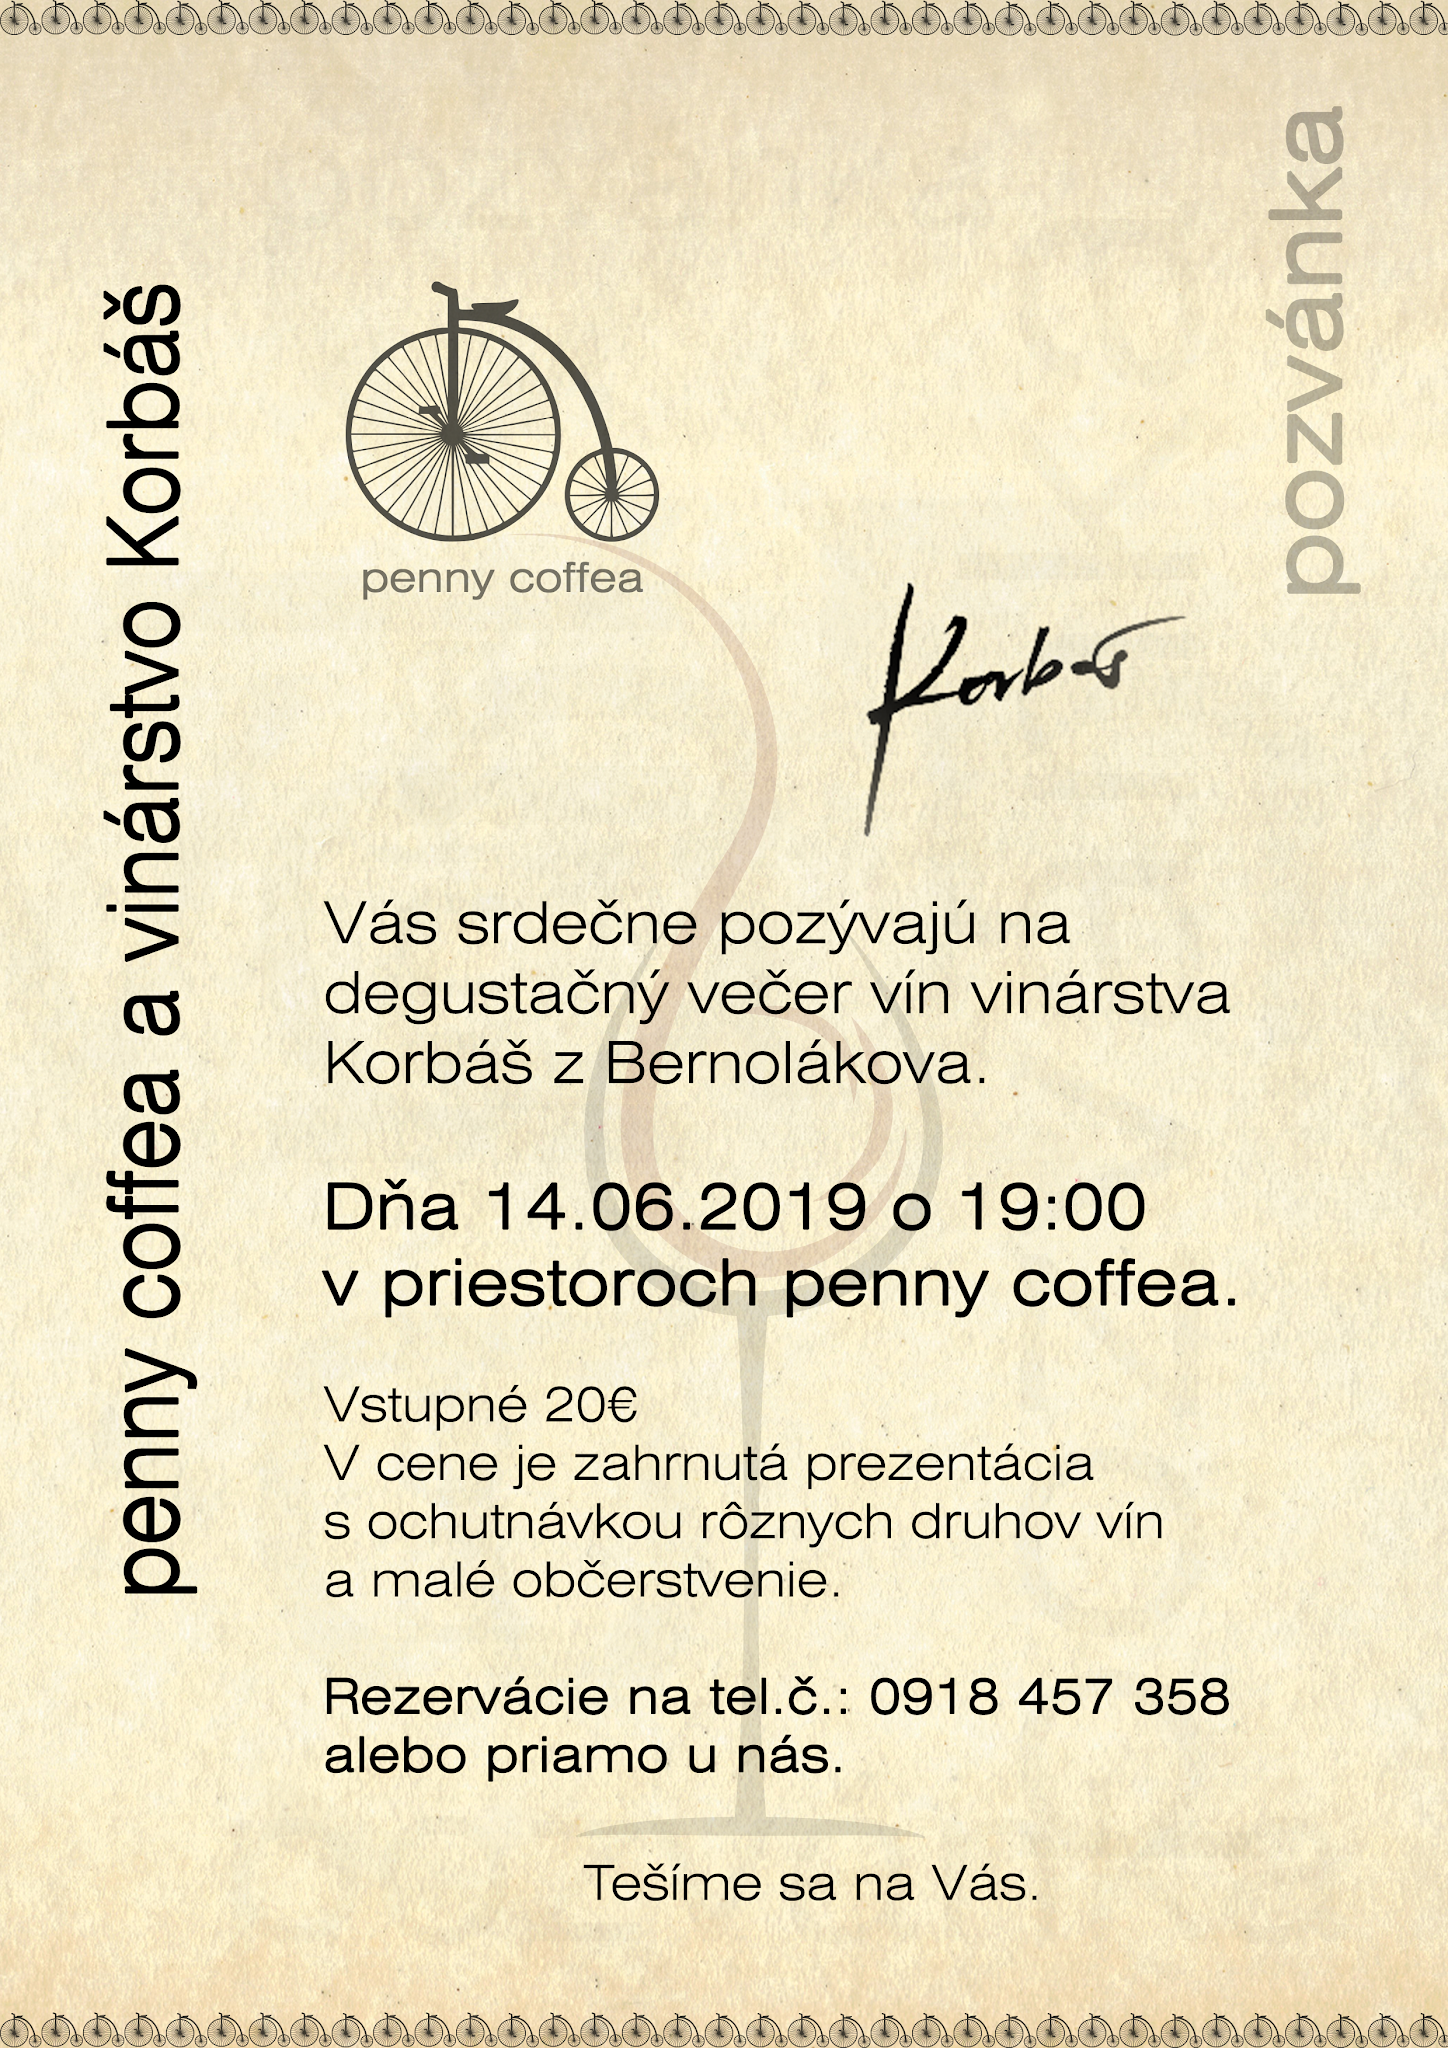 Degustačný večer v penny coffea s vinárstvom Korbaš (14.6.2018)